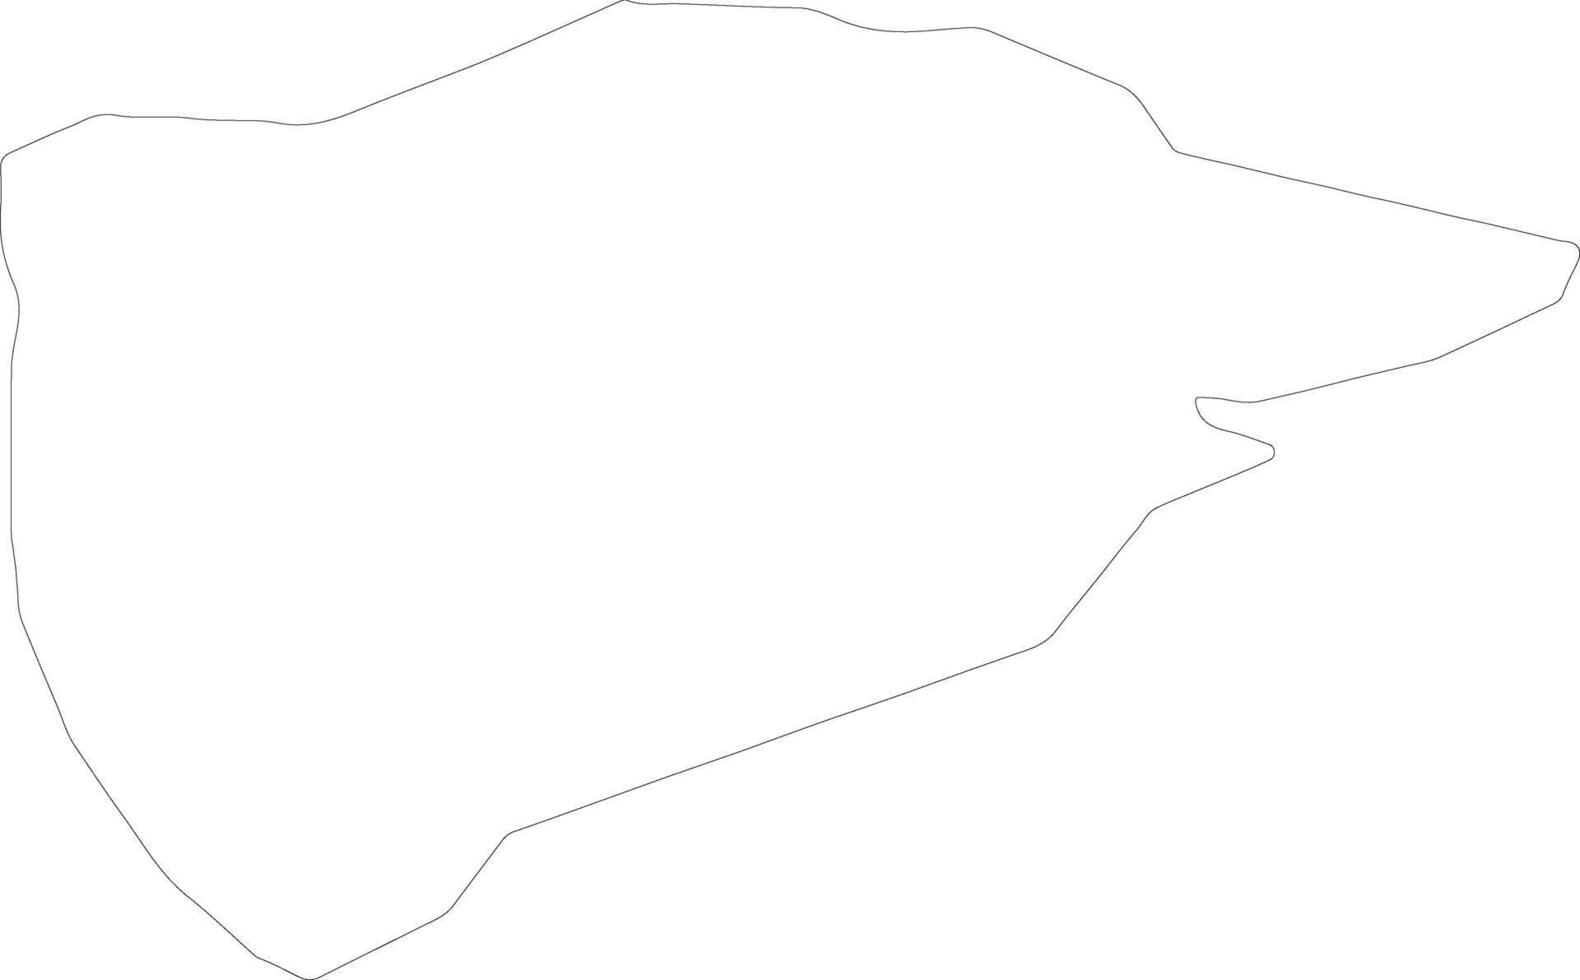 rutland Verenigde koninkrijk schets kaart vector